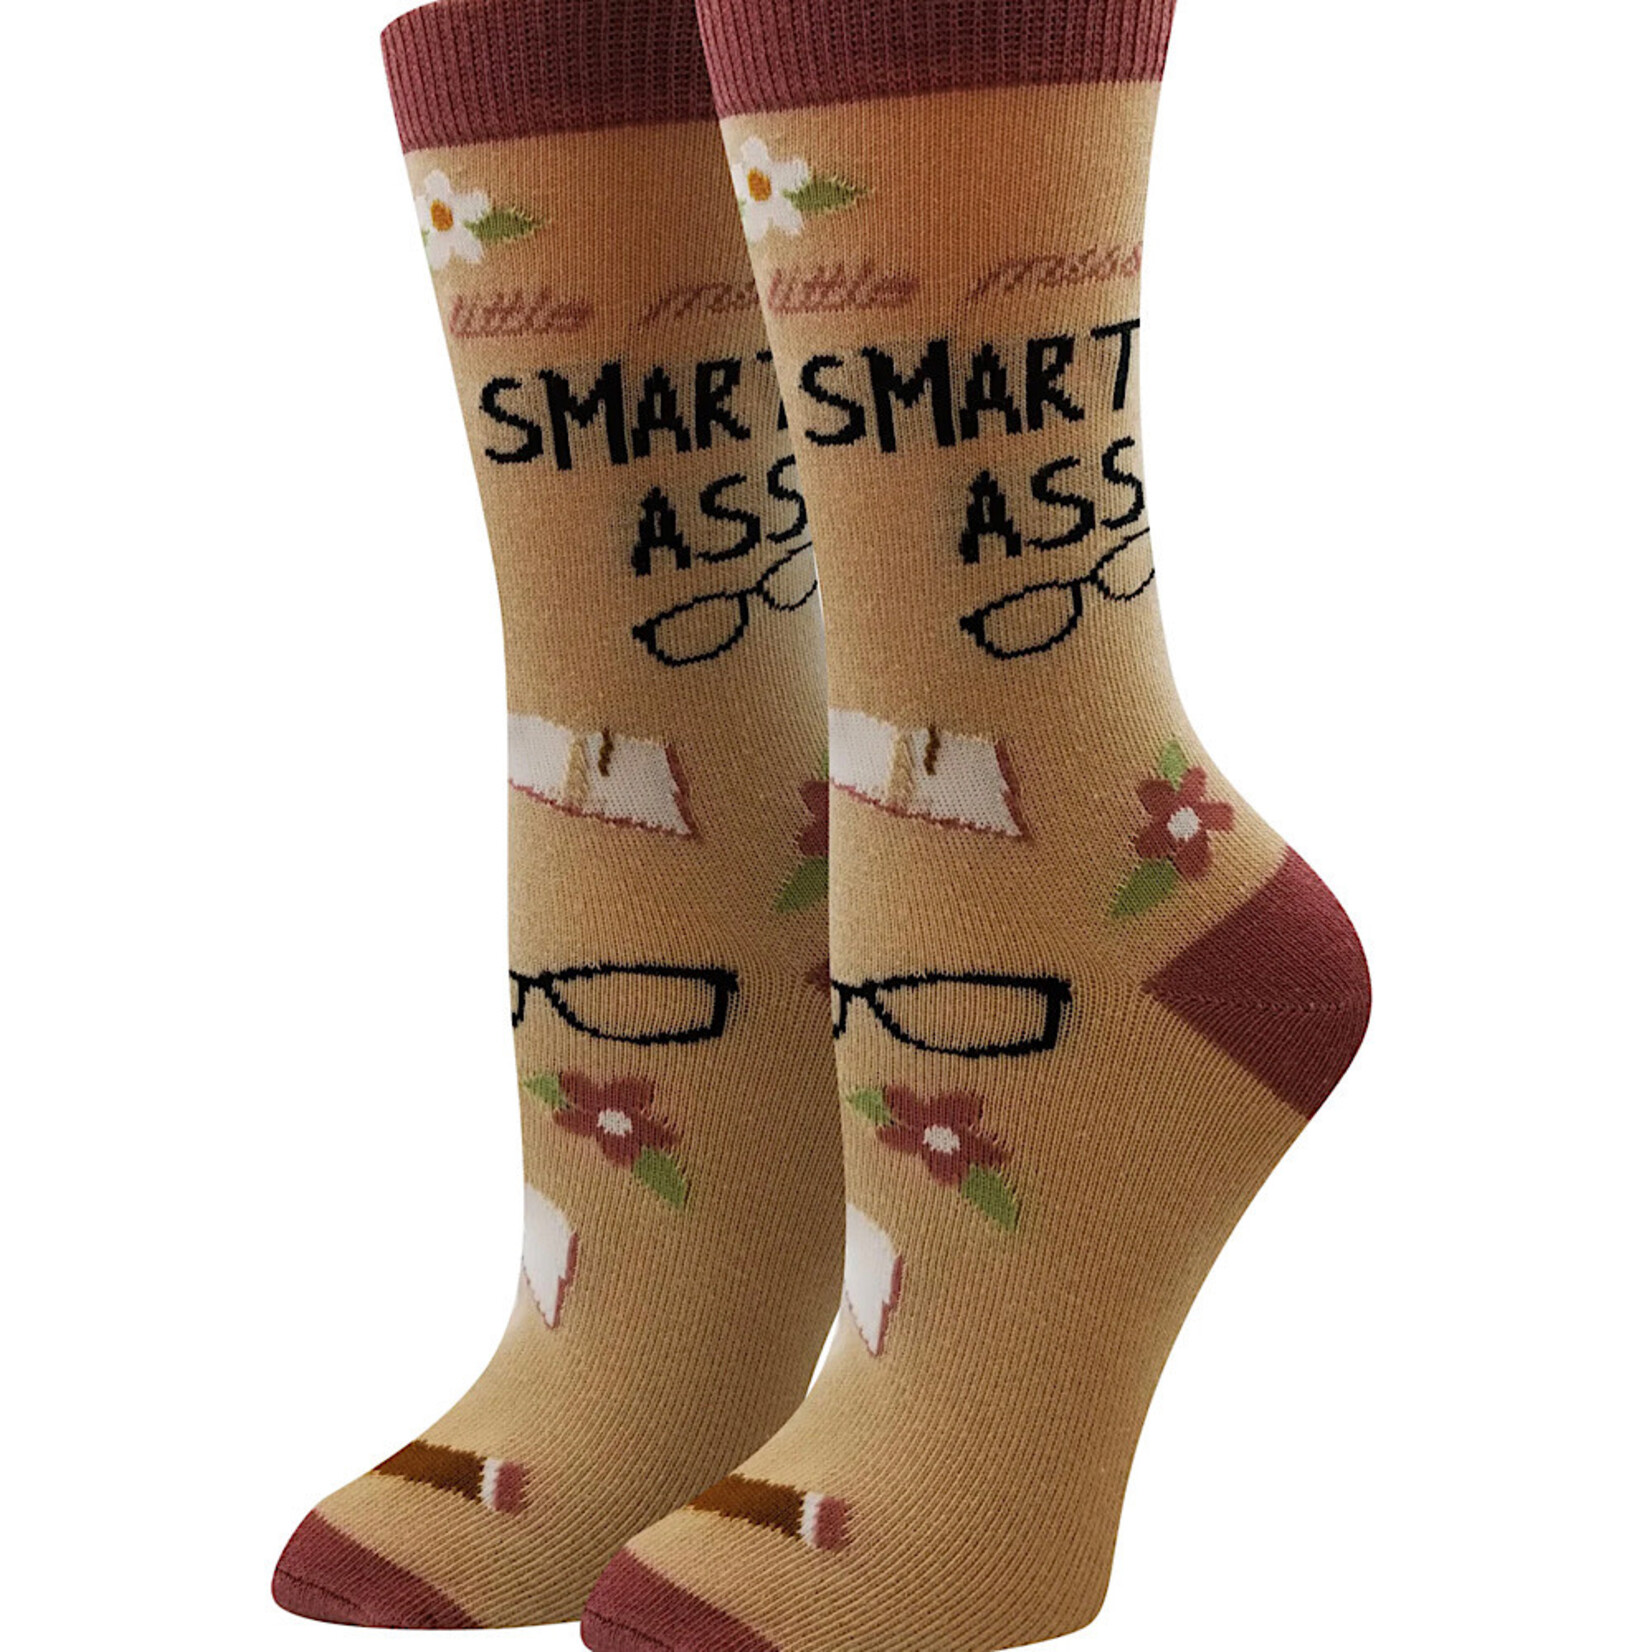 Socks (Womens) - Little Miss Smart Ass